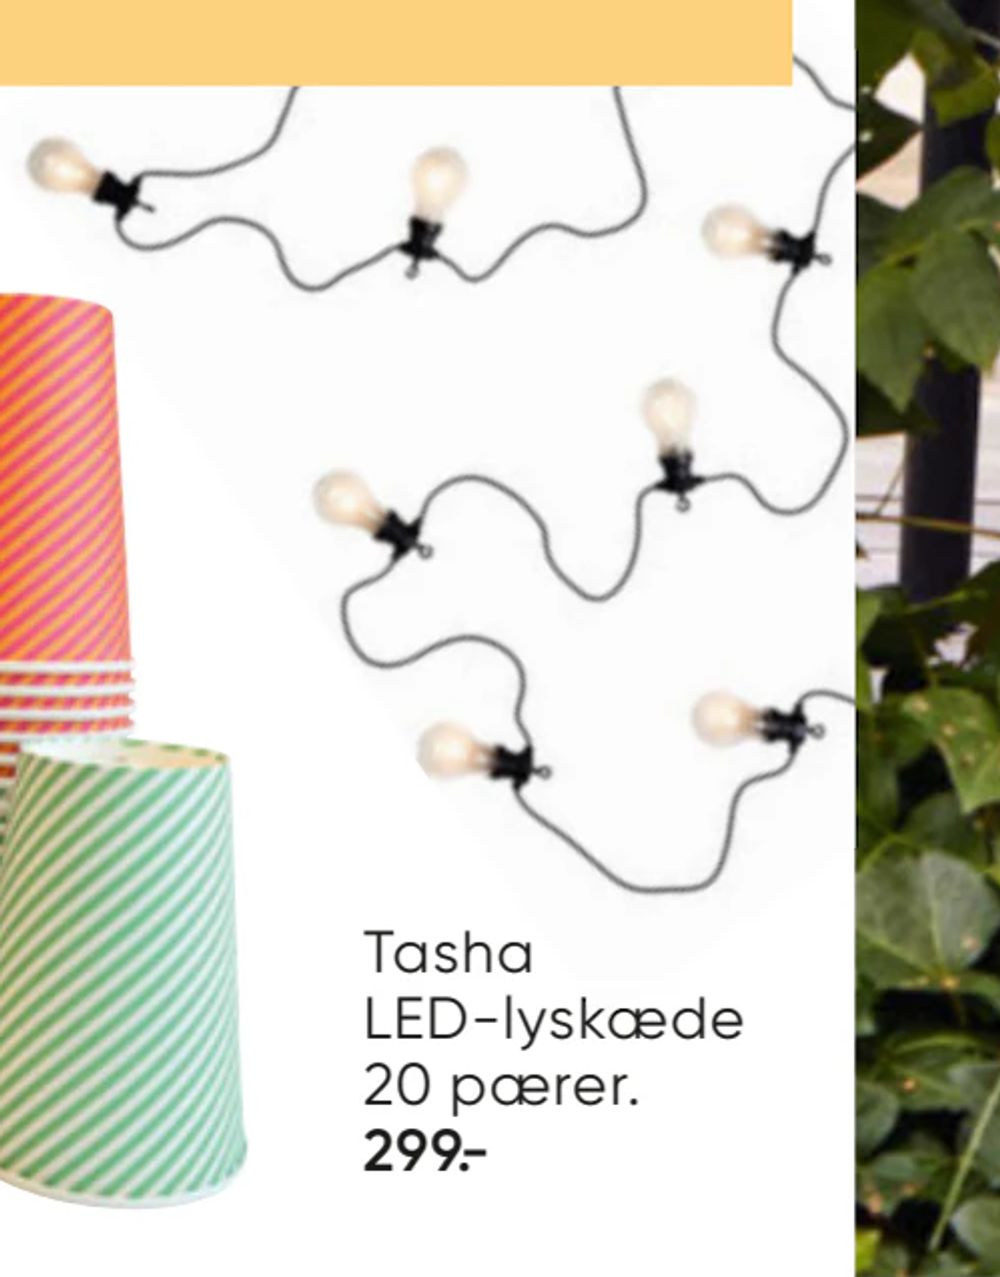 Tilbud på Tasha LED-lyskæde 20 pærer fra Bilka til 299 kr.